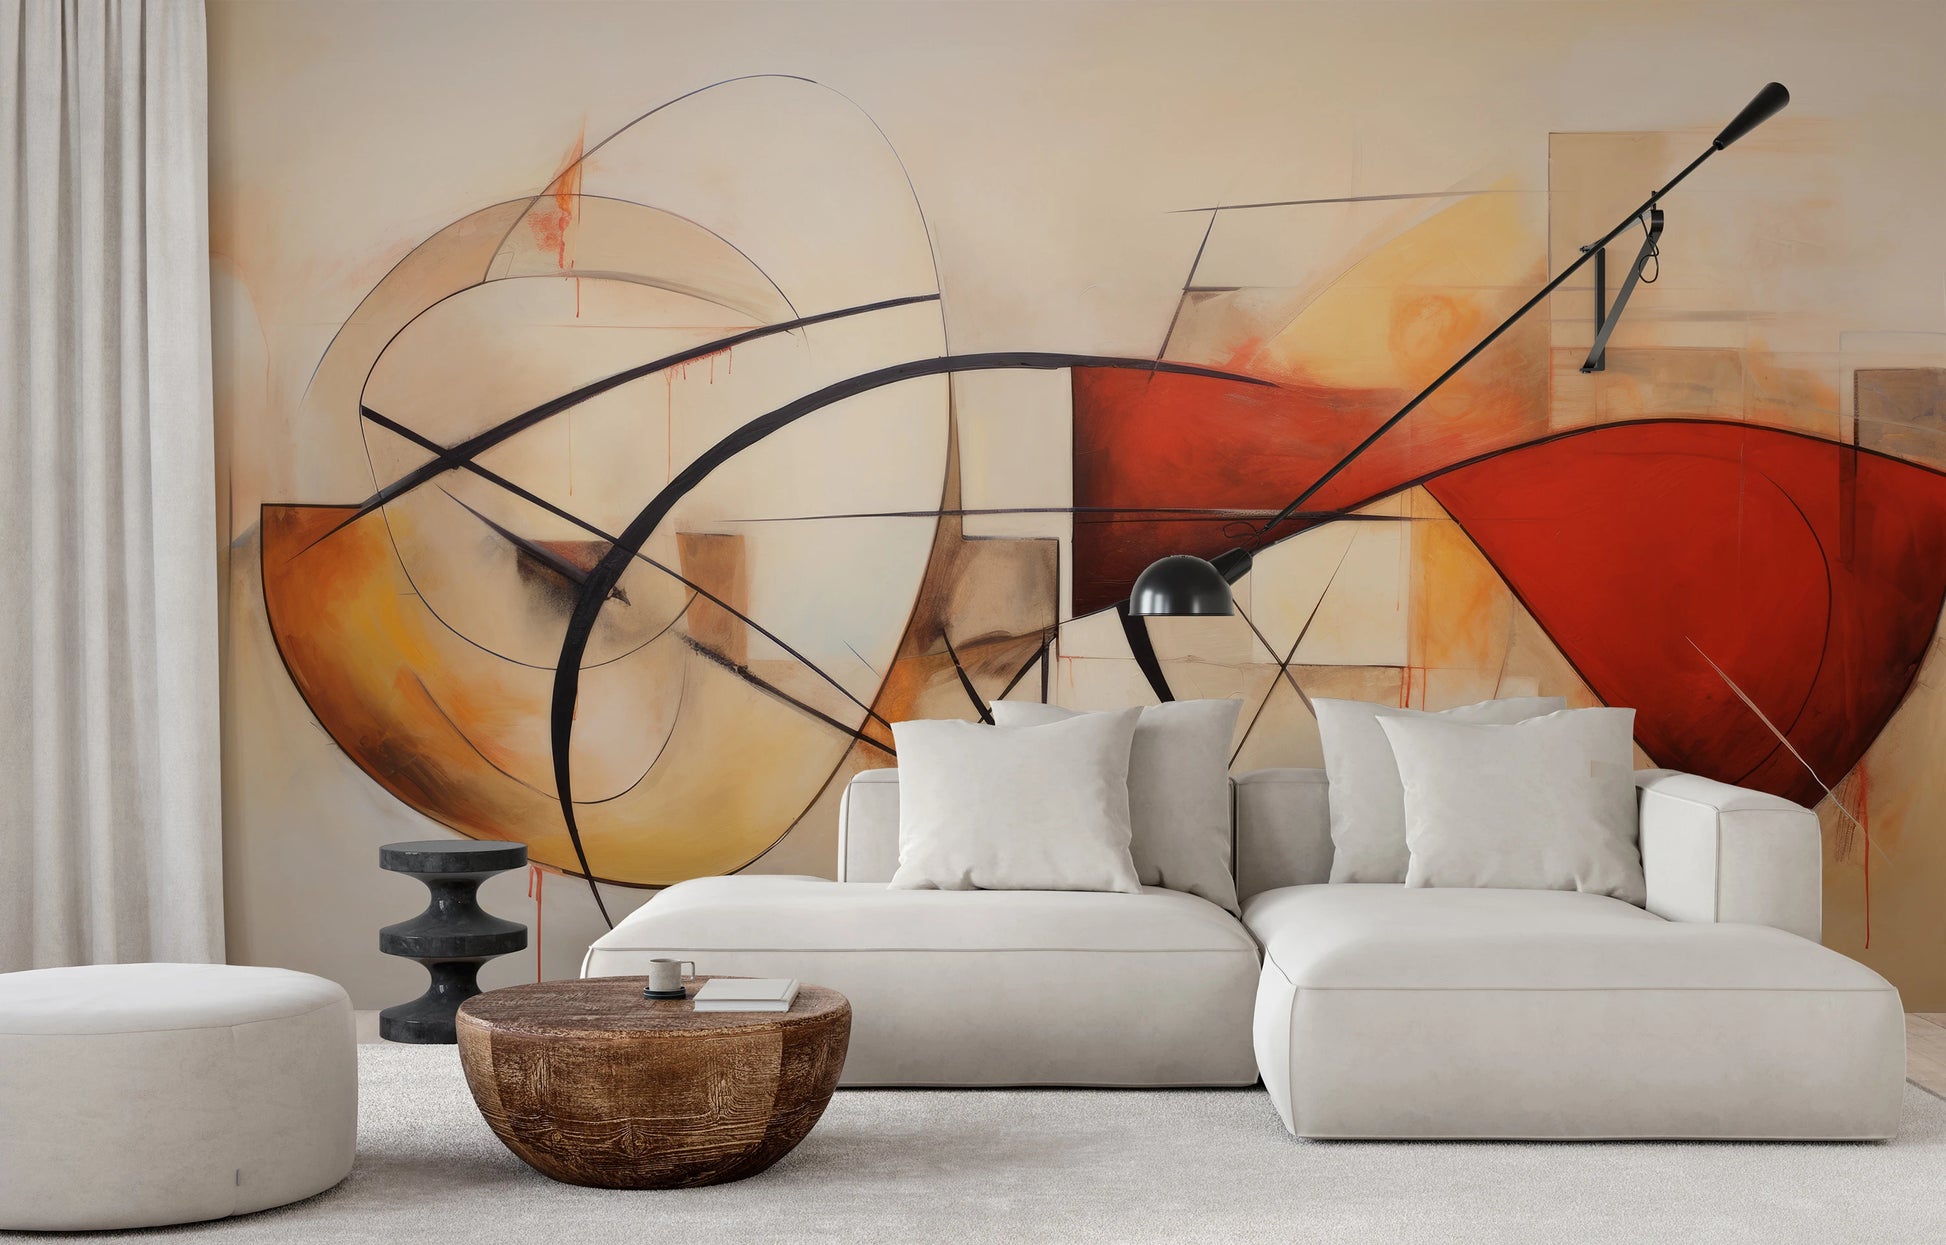 Wzór fototapety o nazwie Artistic Whirl pokazanej w kontekście pomieszczenia.